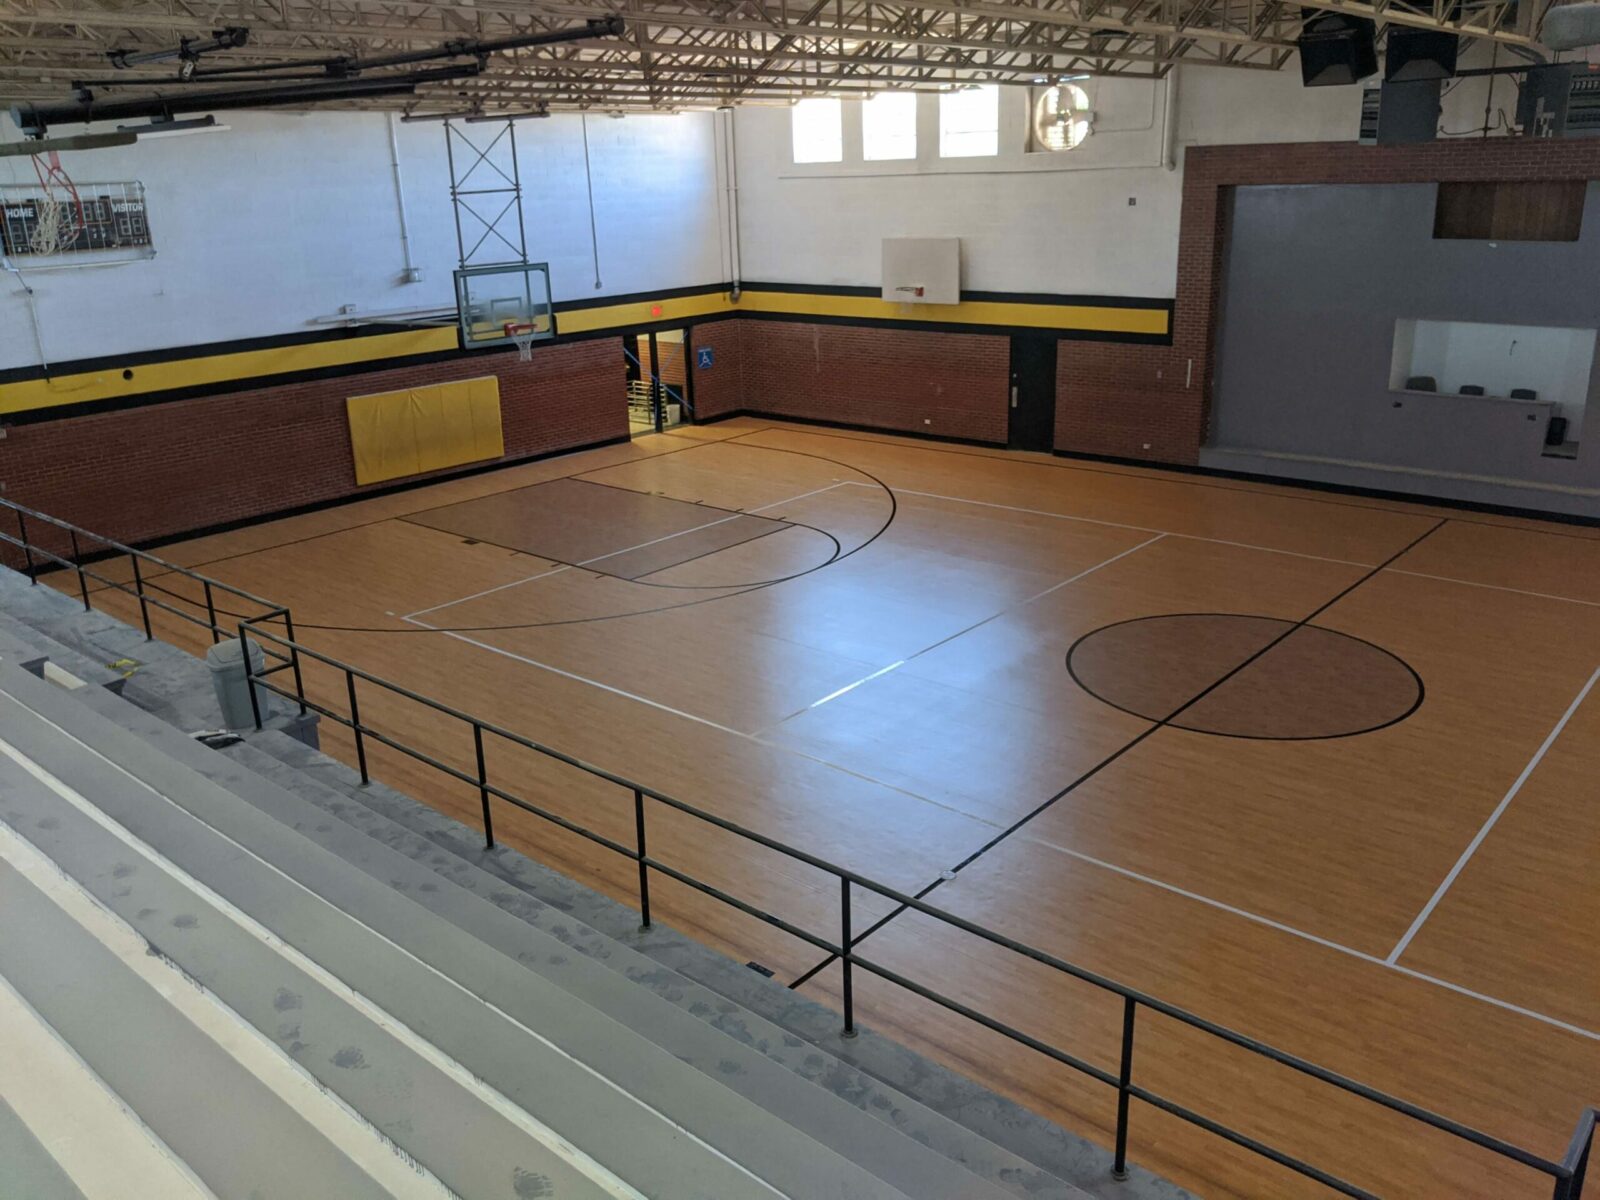 Indoor basketball court